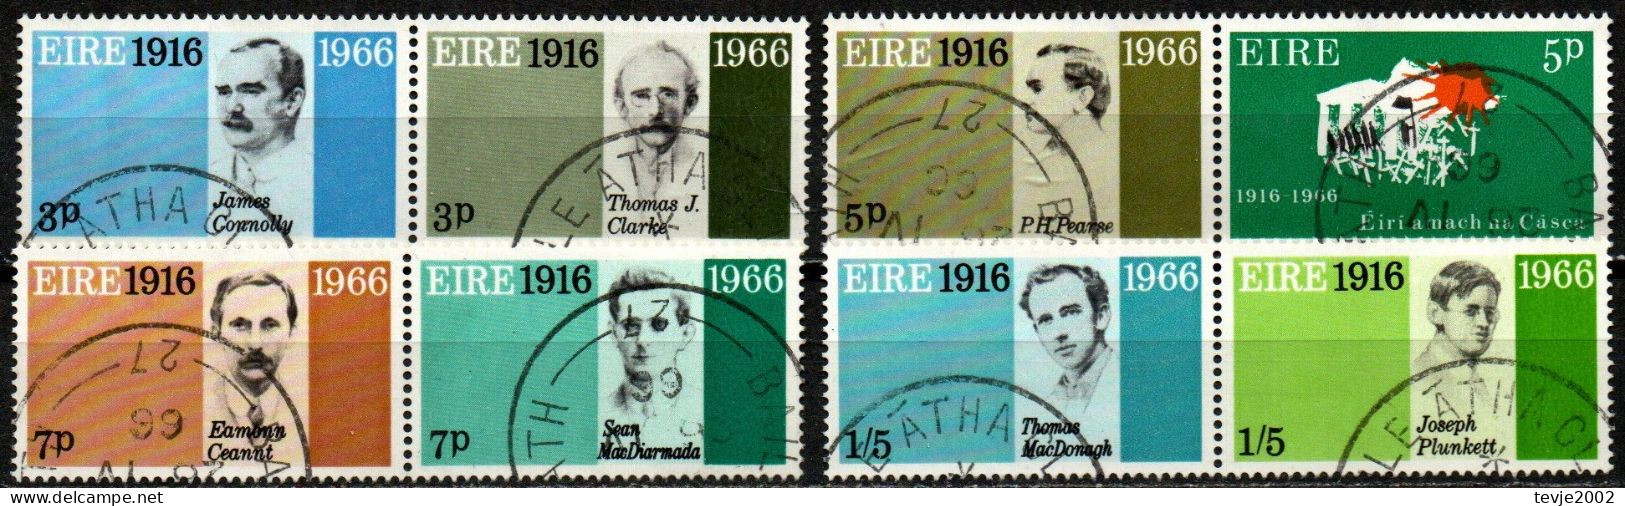 Irland Eire 1966 - Mi.Nr. 178 - 185 - 4 Paare - Gestempelt Used - Gebraucht